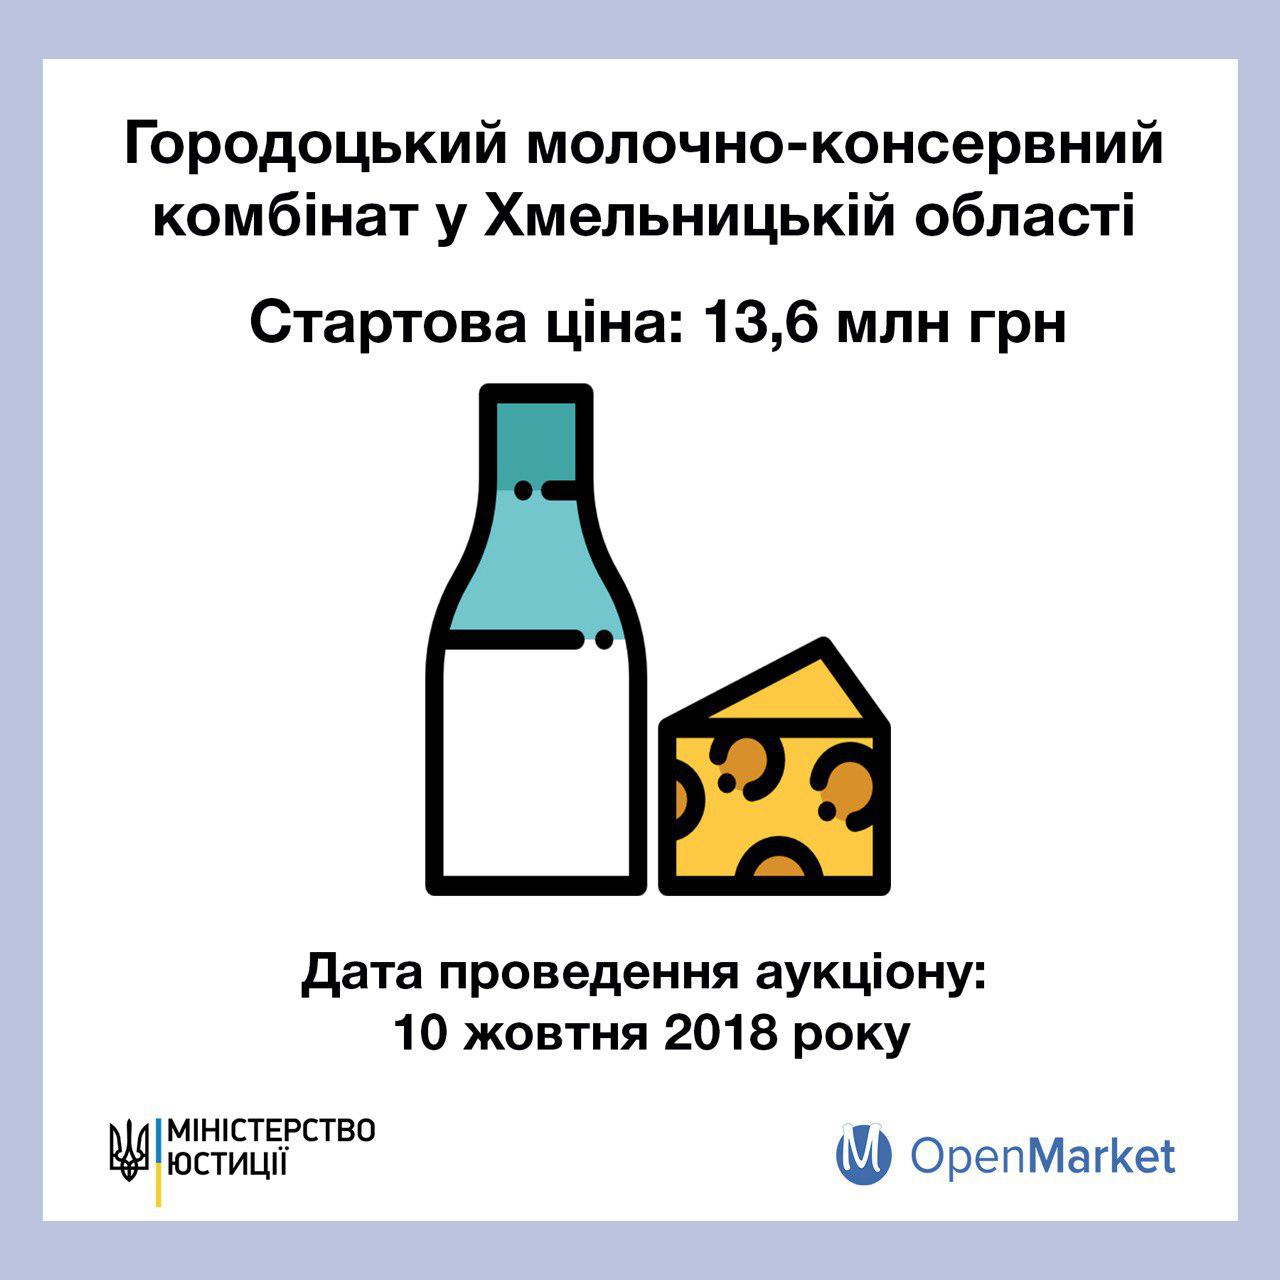 OpenMarket (ДП “СЕТАМ”) продає Городоцький молочно-консервний комбінат за 13,6 млн грн - Фото